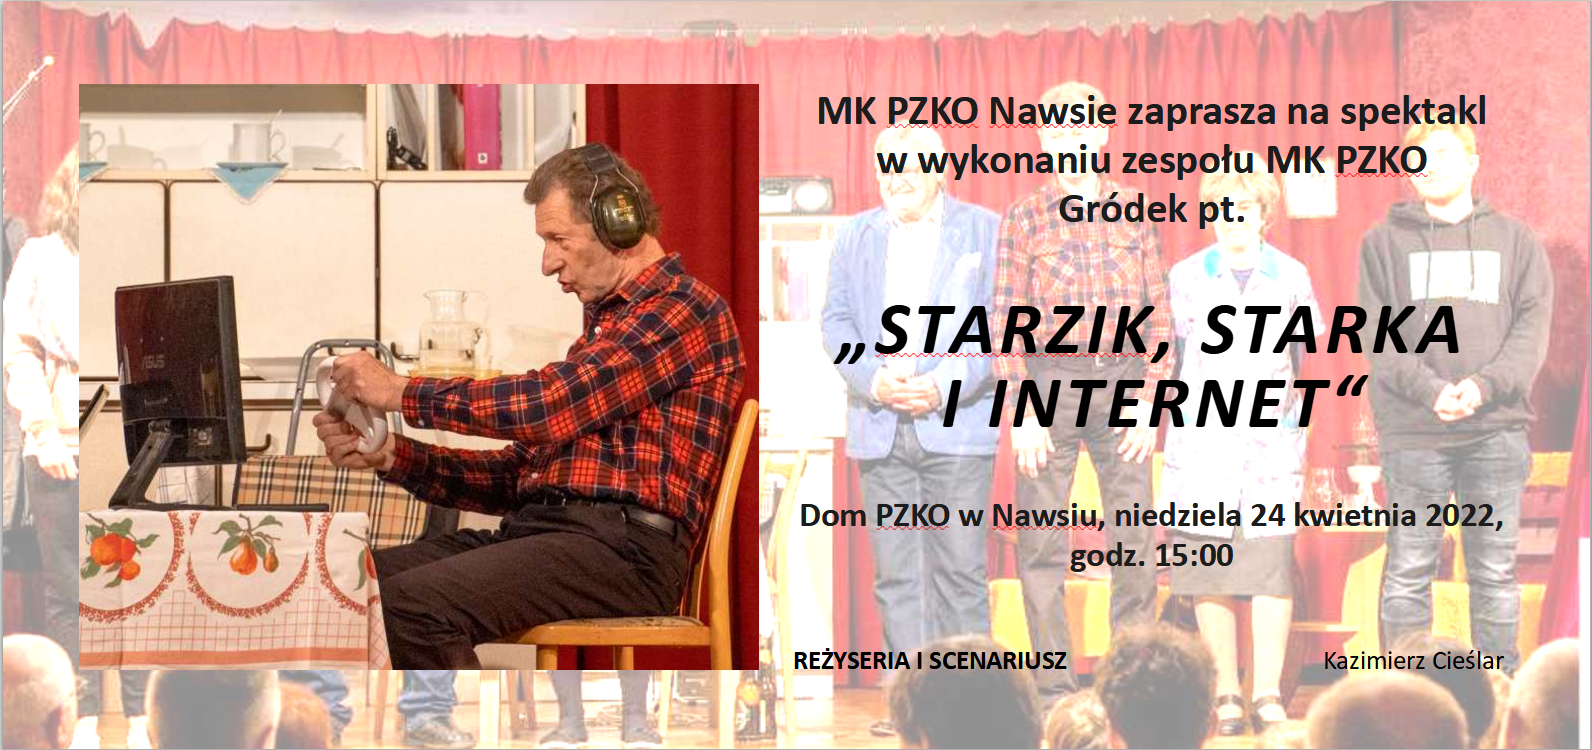 Spektakl w wykonaniu zespołu MK PZKO Gródek pt.  „STARZIK, STARKA I NTERNET“